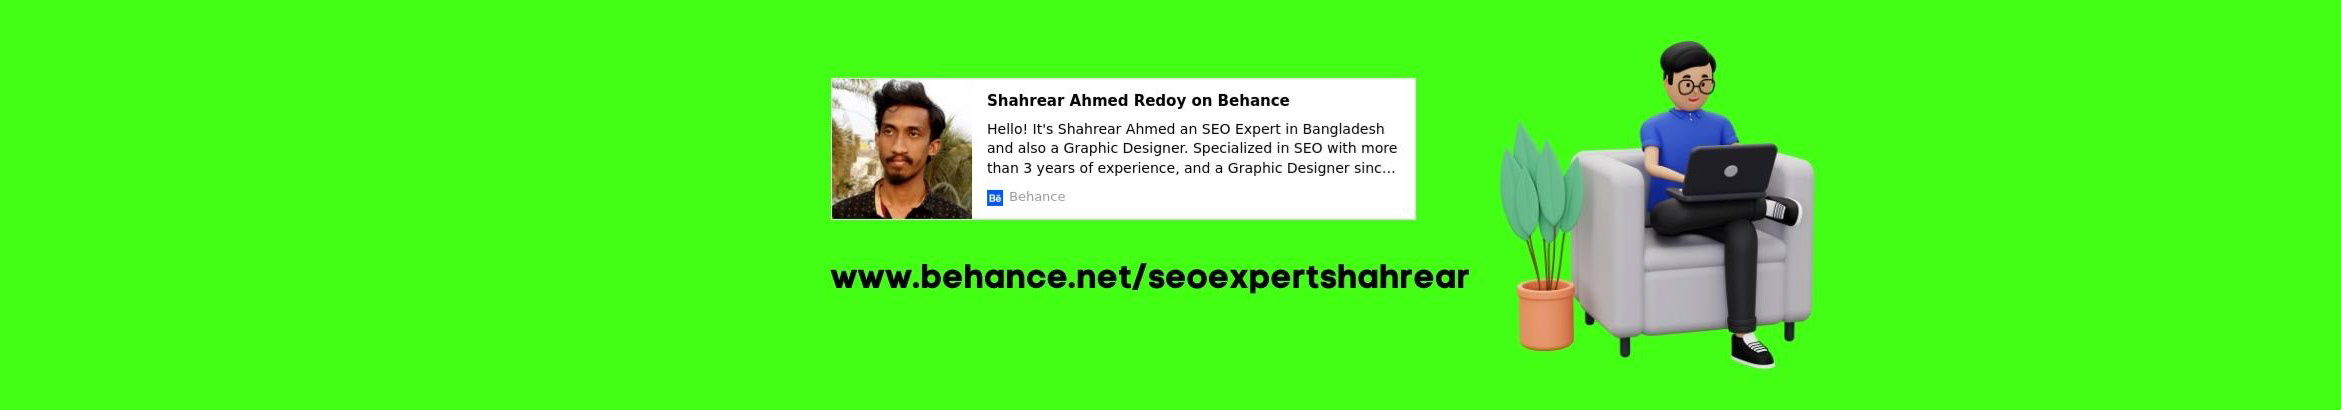 Shahrear Ahmed Redoys profilbanner